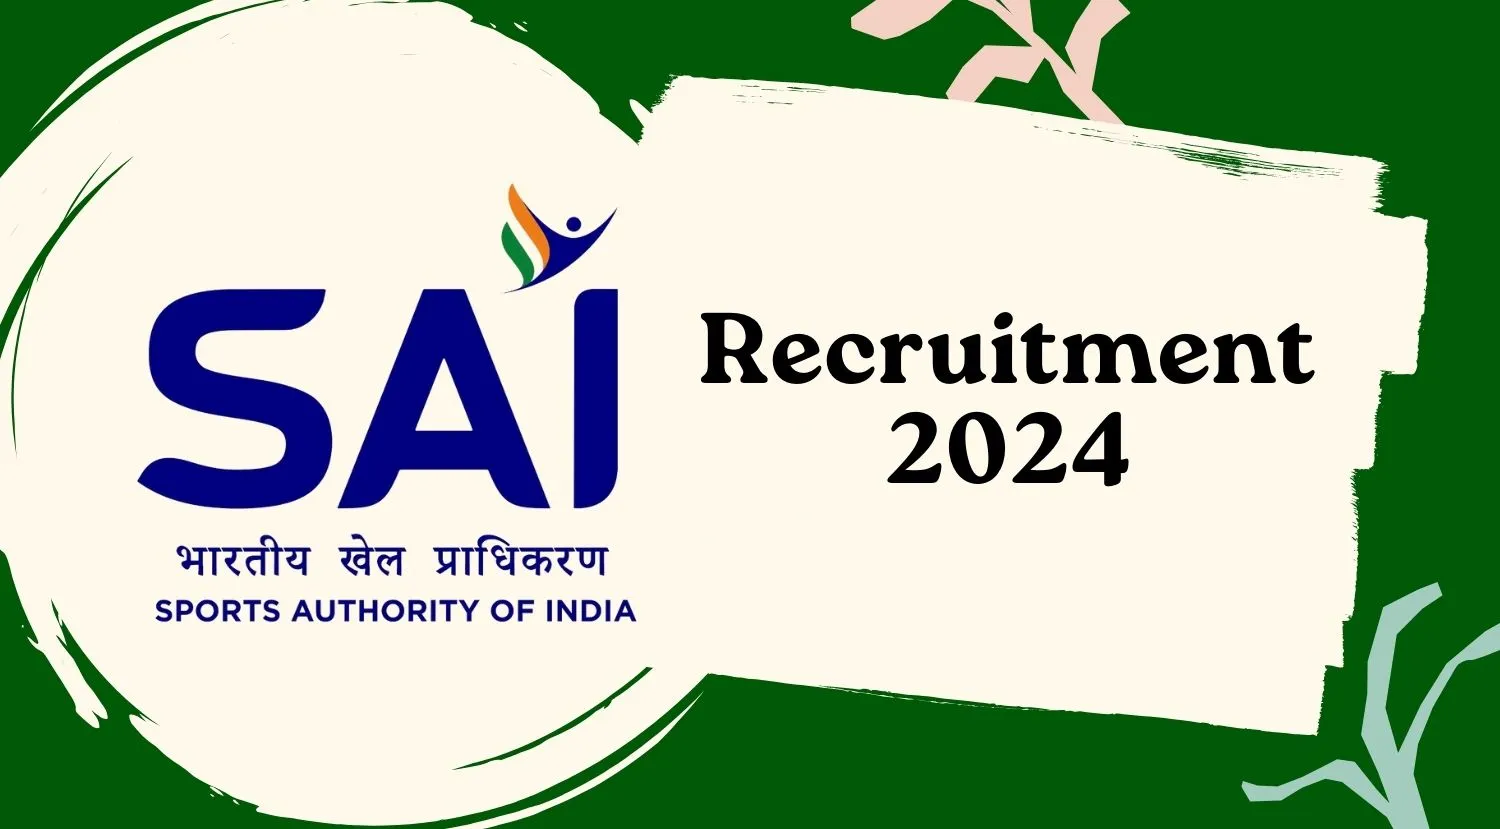 SAI Recruitment 2024 for Junior Consultant Posts